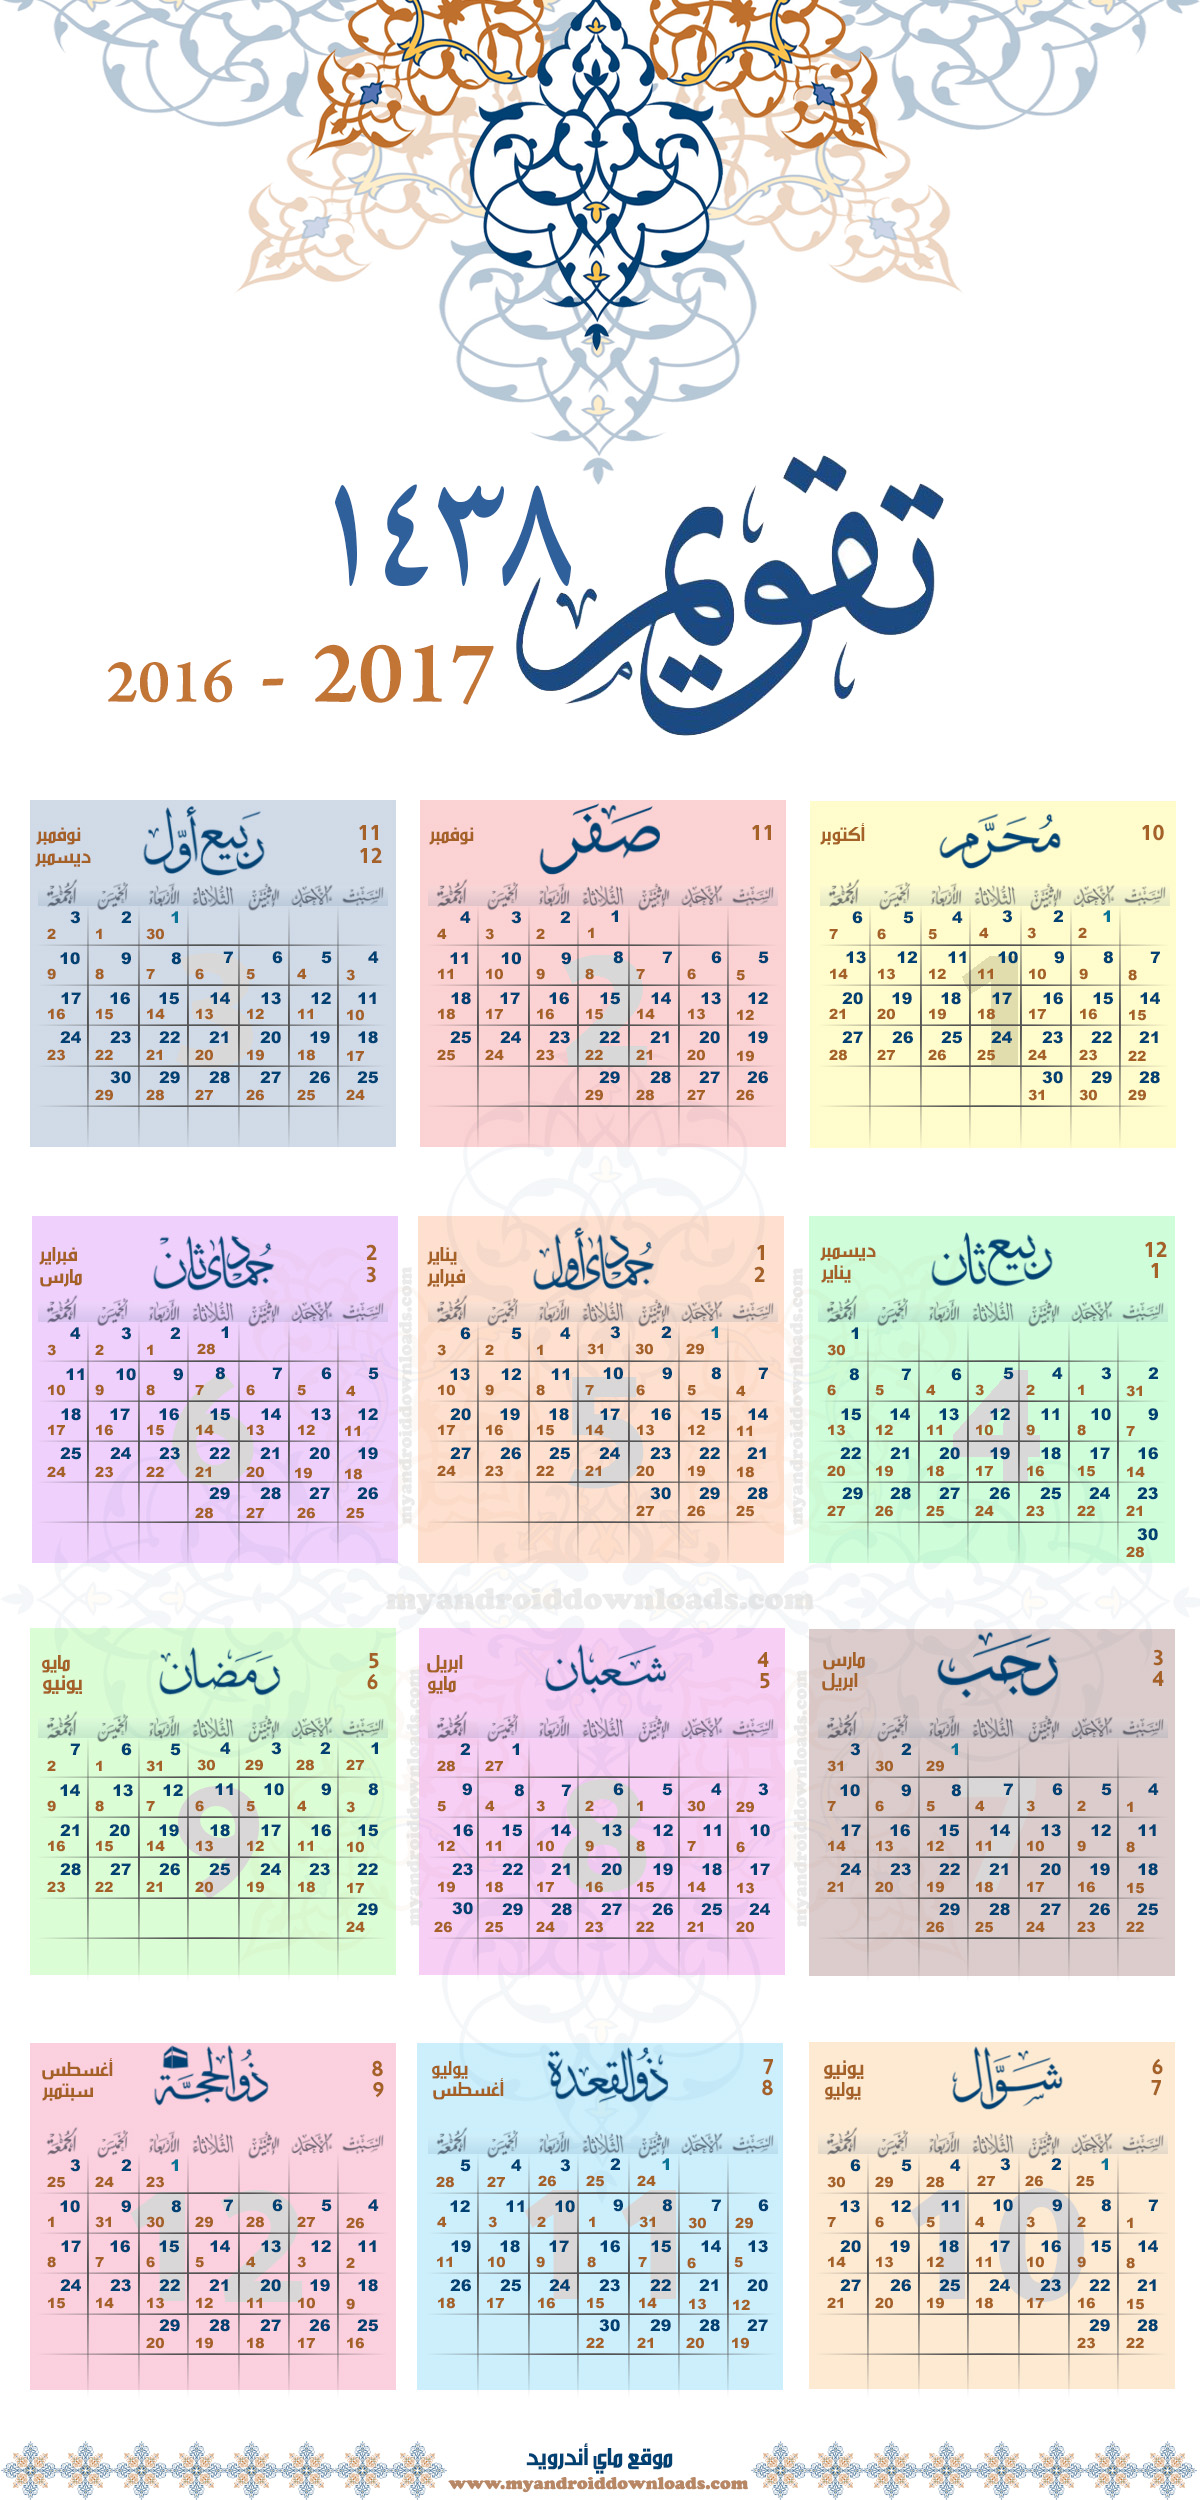 التقويم الميلادي 2017 التقويم الميلادي والهجري لعام 2017 صورة كاملة للطباعة Pdf